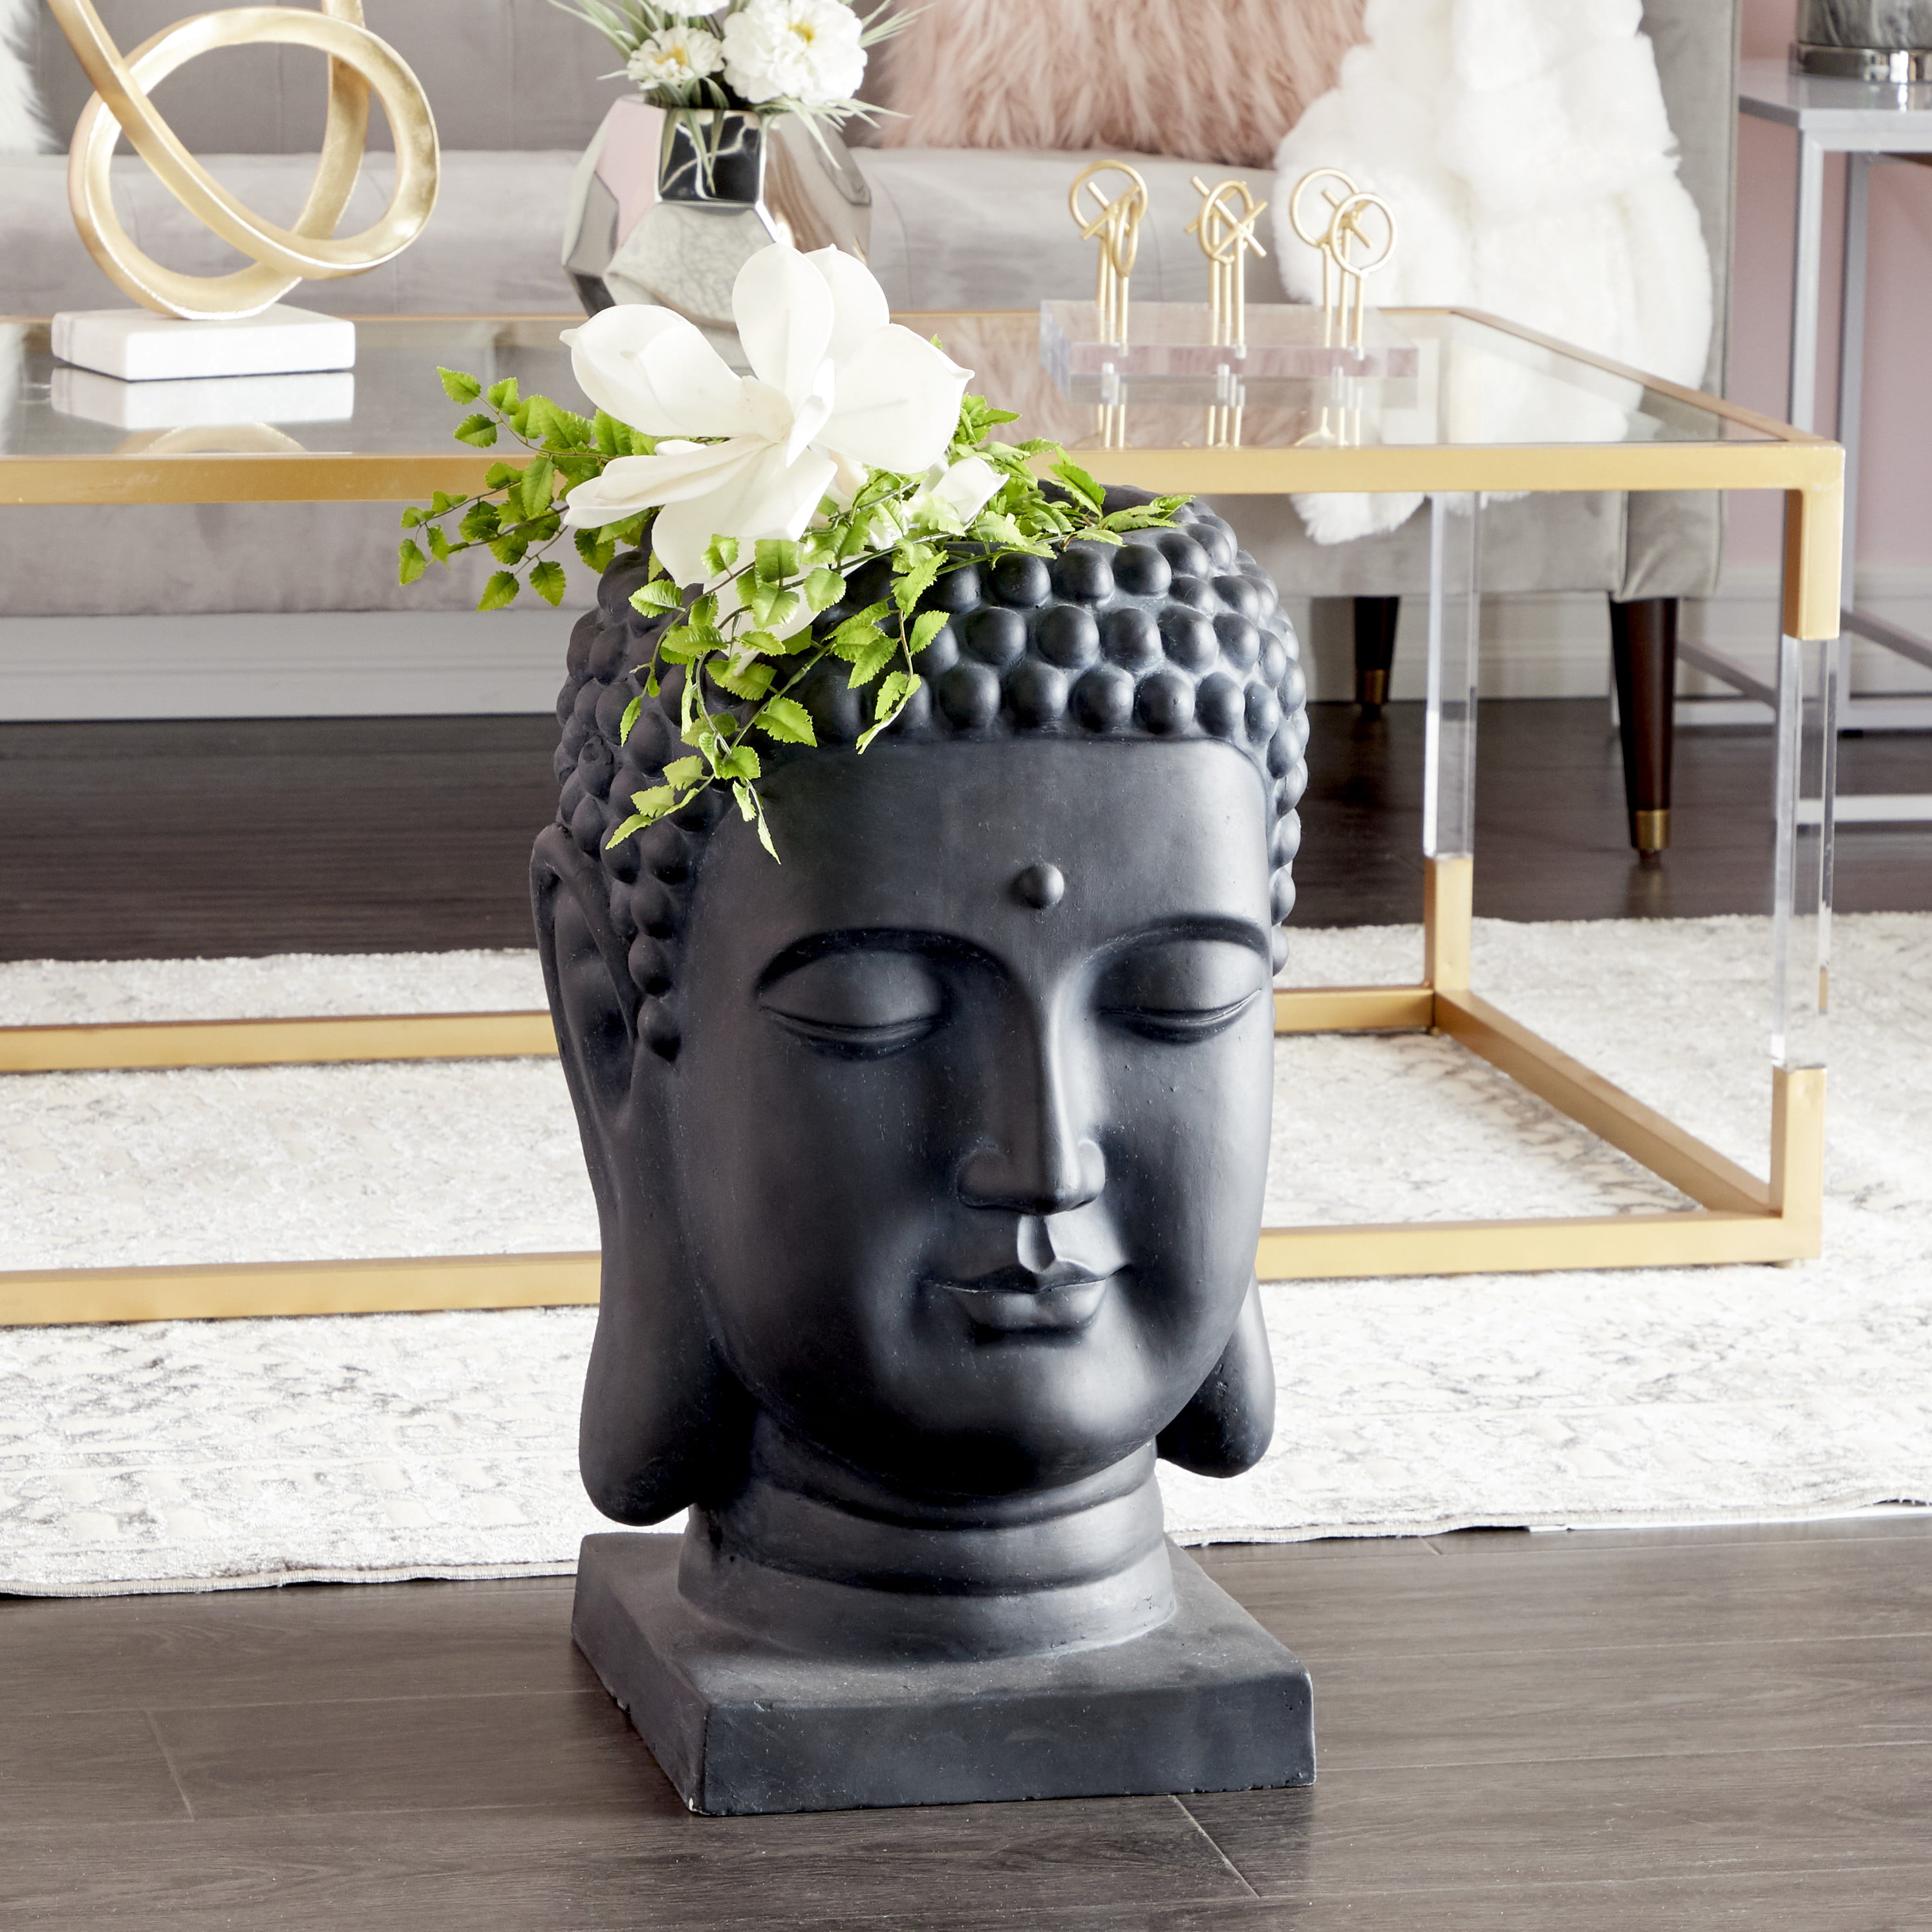 送料無料 Pacific Giftware Decorative Large Zen Buddha Head Resin Planter Pot Rustic